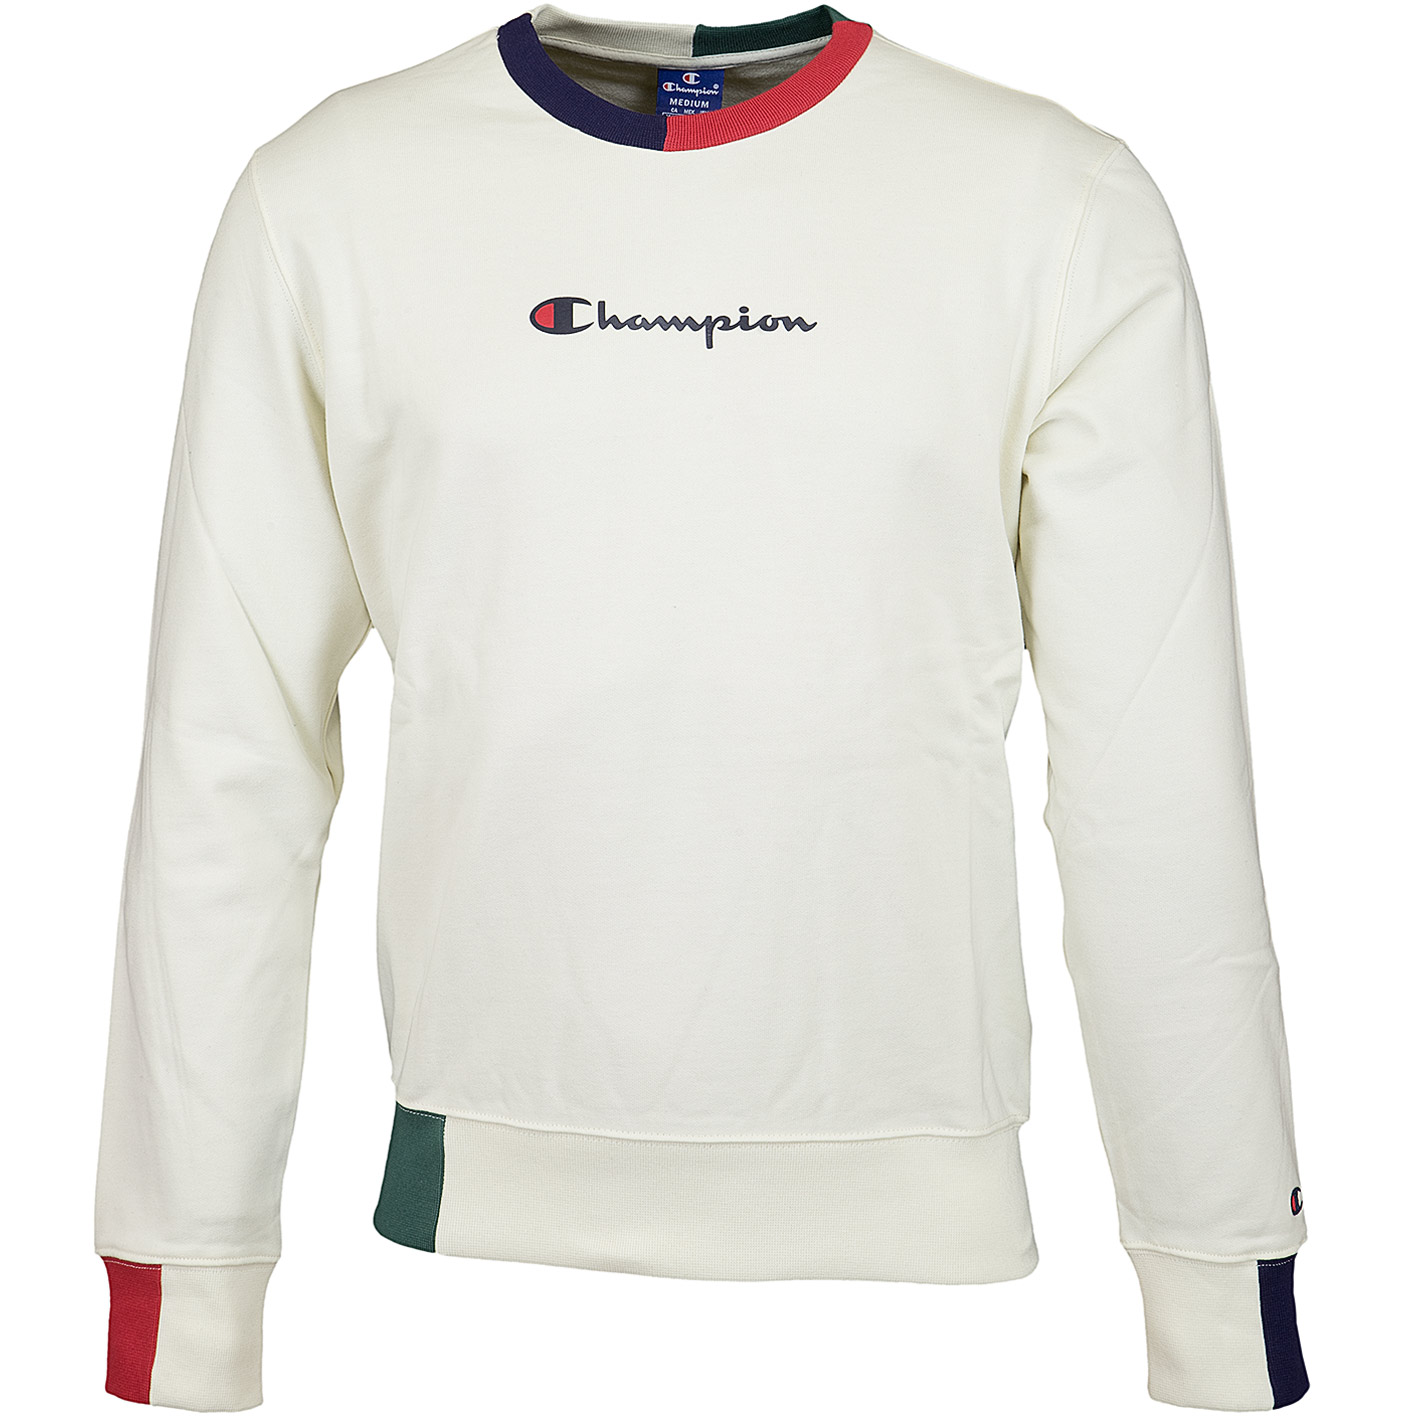 ☆ Champion Sweatshirt Logo - bestellen! hier weiß